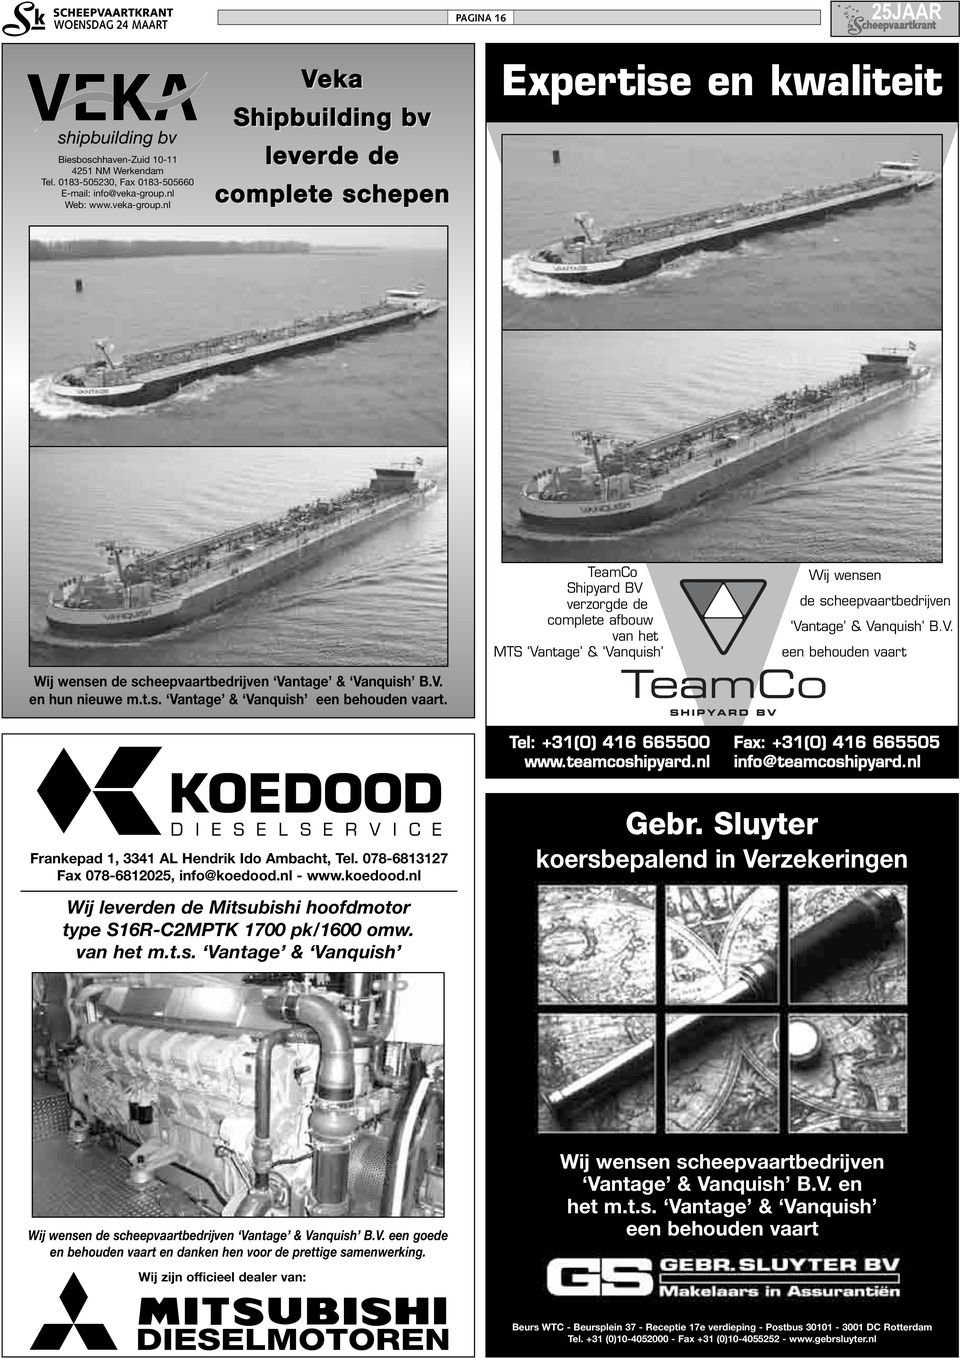 nl Veka Shipbuilding bv leverde de complete schepen Expertise en kwaliteit TeamCo Shipyard BV verzorgde de complete afbouw van het MTS Vantage & Vanquish Wij wensen de scheepvaartbedrijven Vantage &